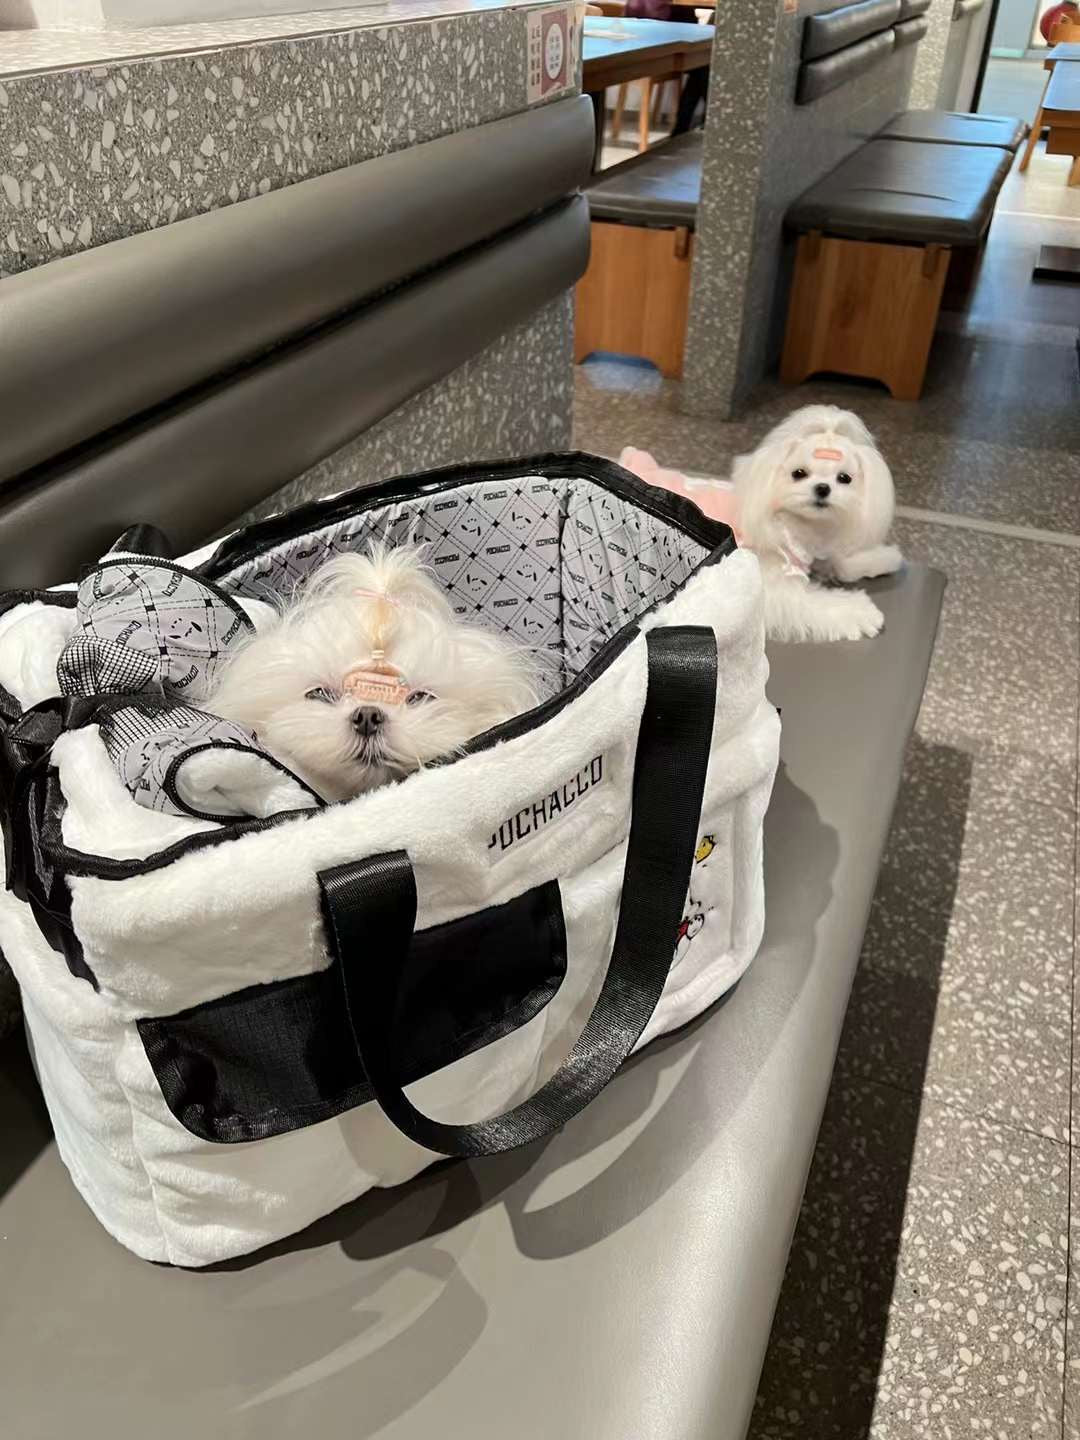 Pochocco Pet Carrier Bag